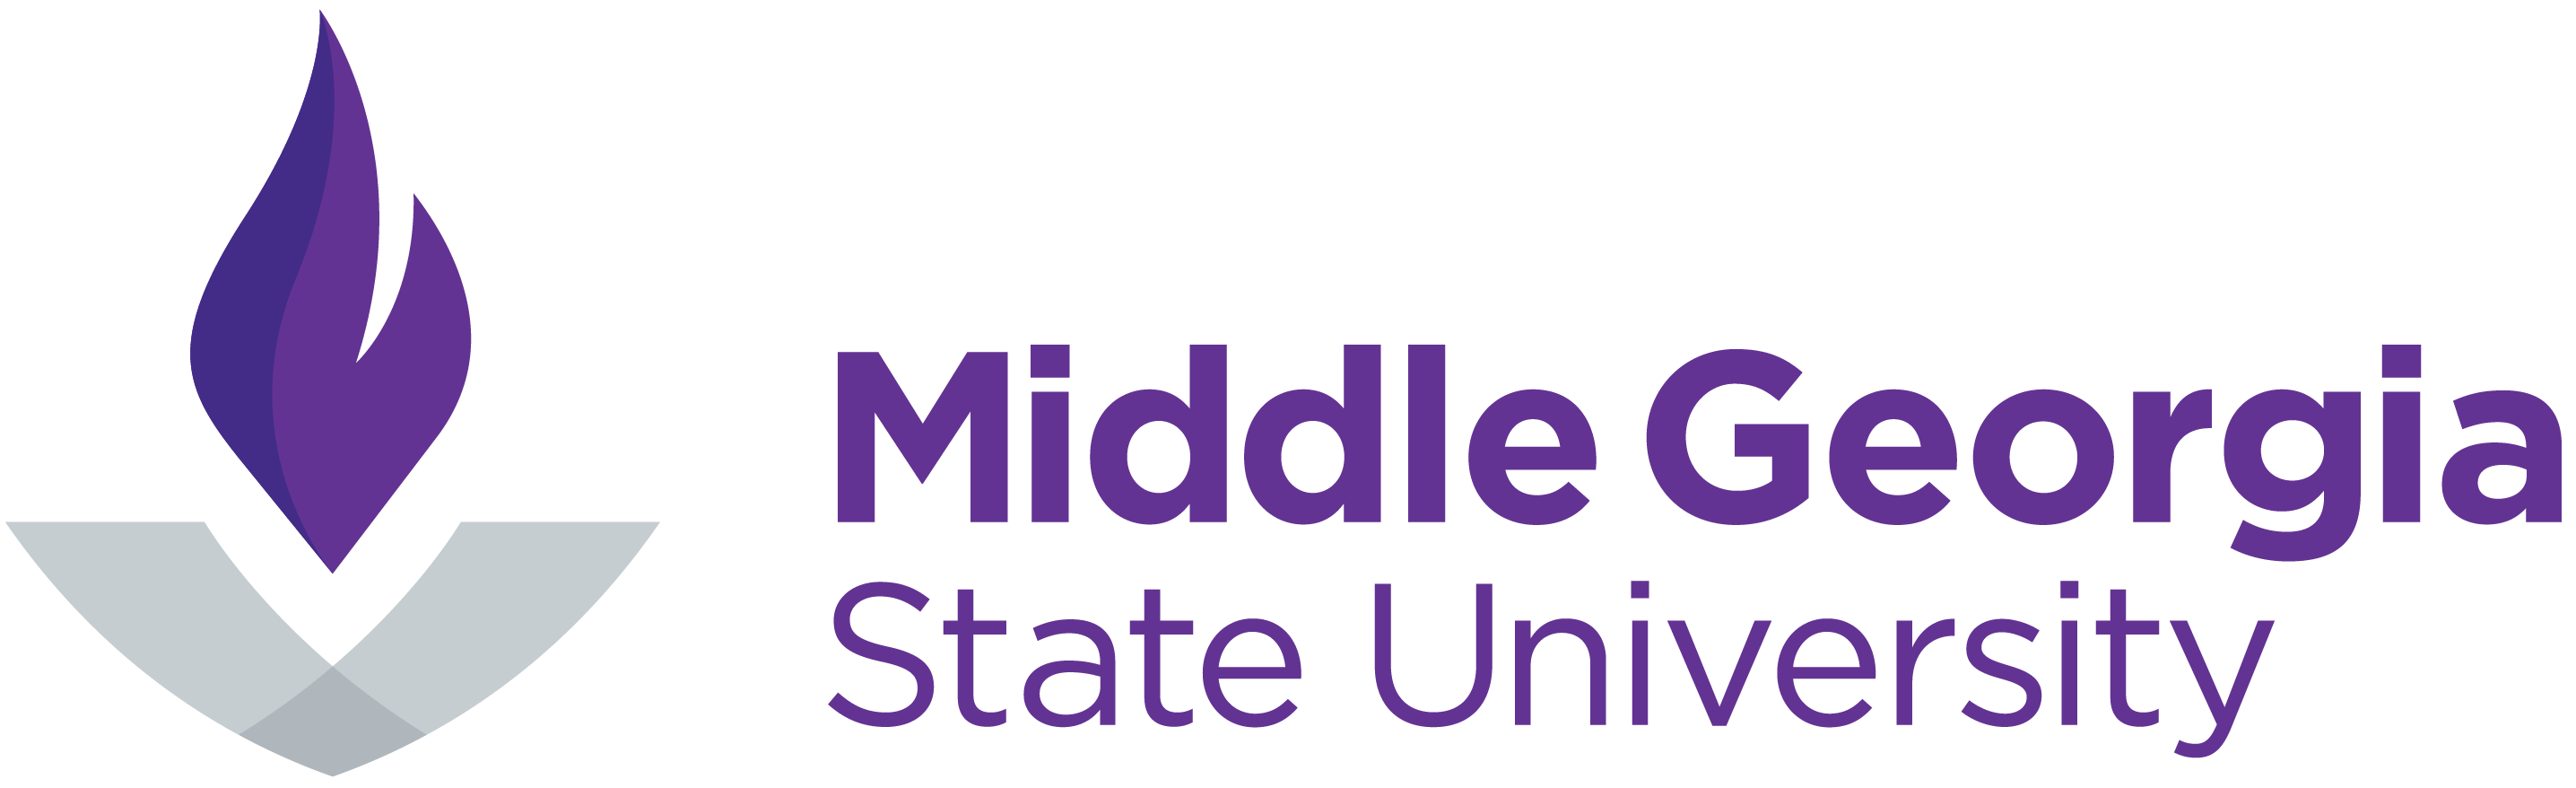 Middle Georgia logo